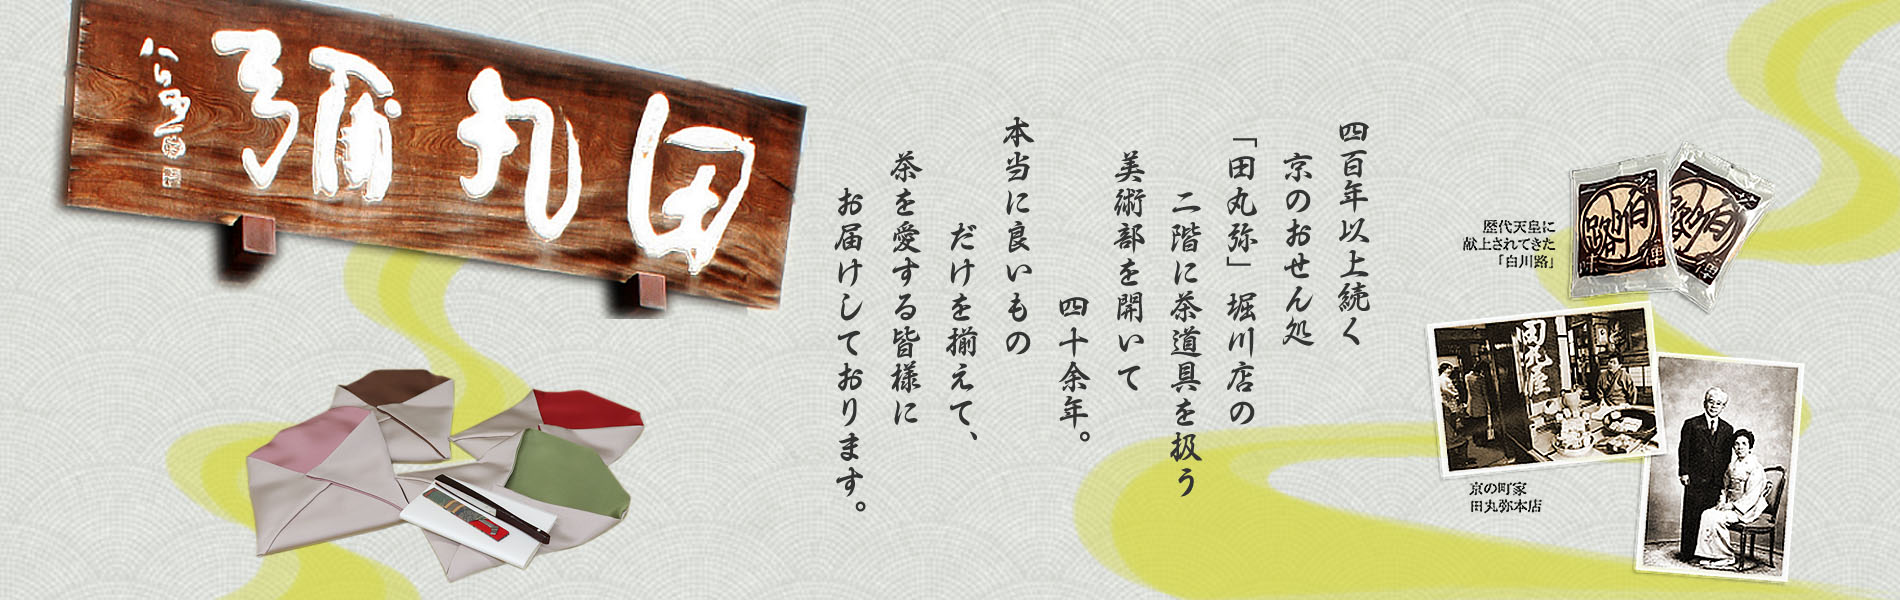 田丸弥美術工芸部 | お稽古品からお茶会のお道具、オリジナル「帛紗